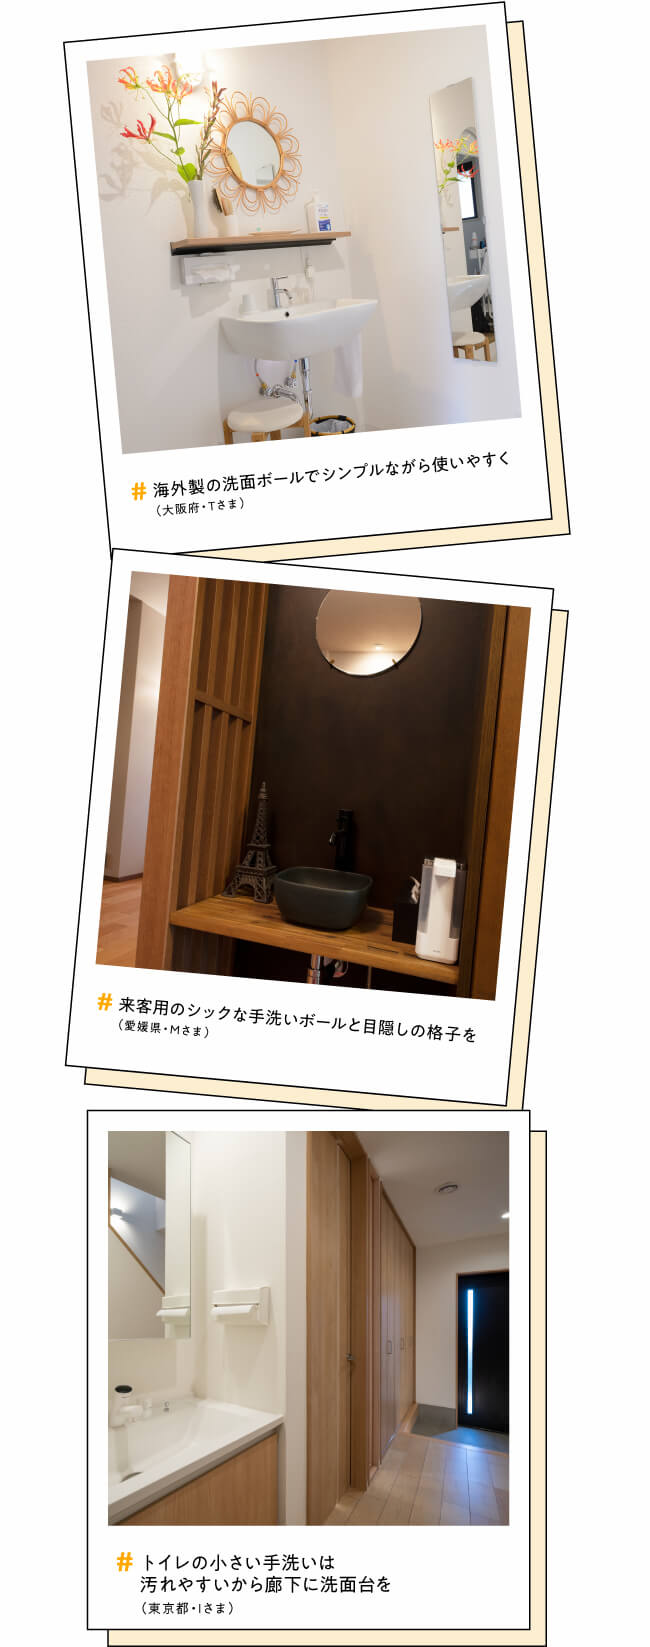 #海外製の洗面ボールでシンプルながら使いやすく（大阪府・Tさま）　#来客用のシックな手洗いボールと目隠しの格子を（愛媛県・Mさま）　#トイレの小さい手洗いは汚れやすいから廊下に洗面台を（東京都・Iさま）